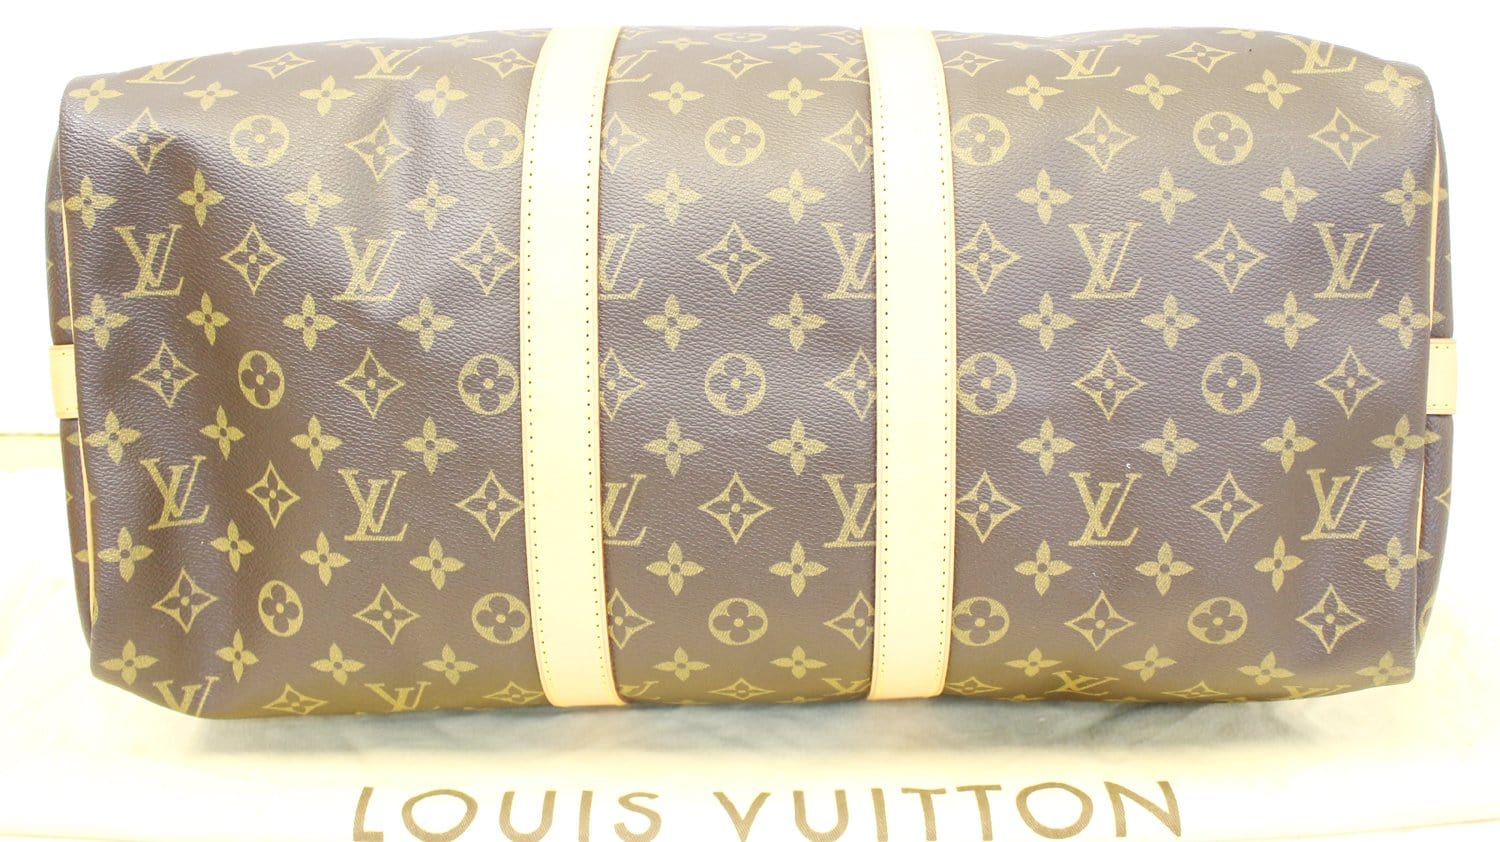 Louis Vuitton Keepall 45 Vs 50 Size Comparison Ft. Monogram Macassar Canvas  + Limited Edition Prism 